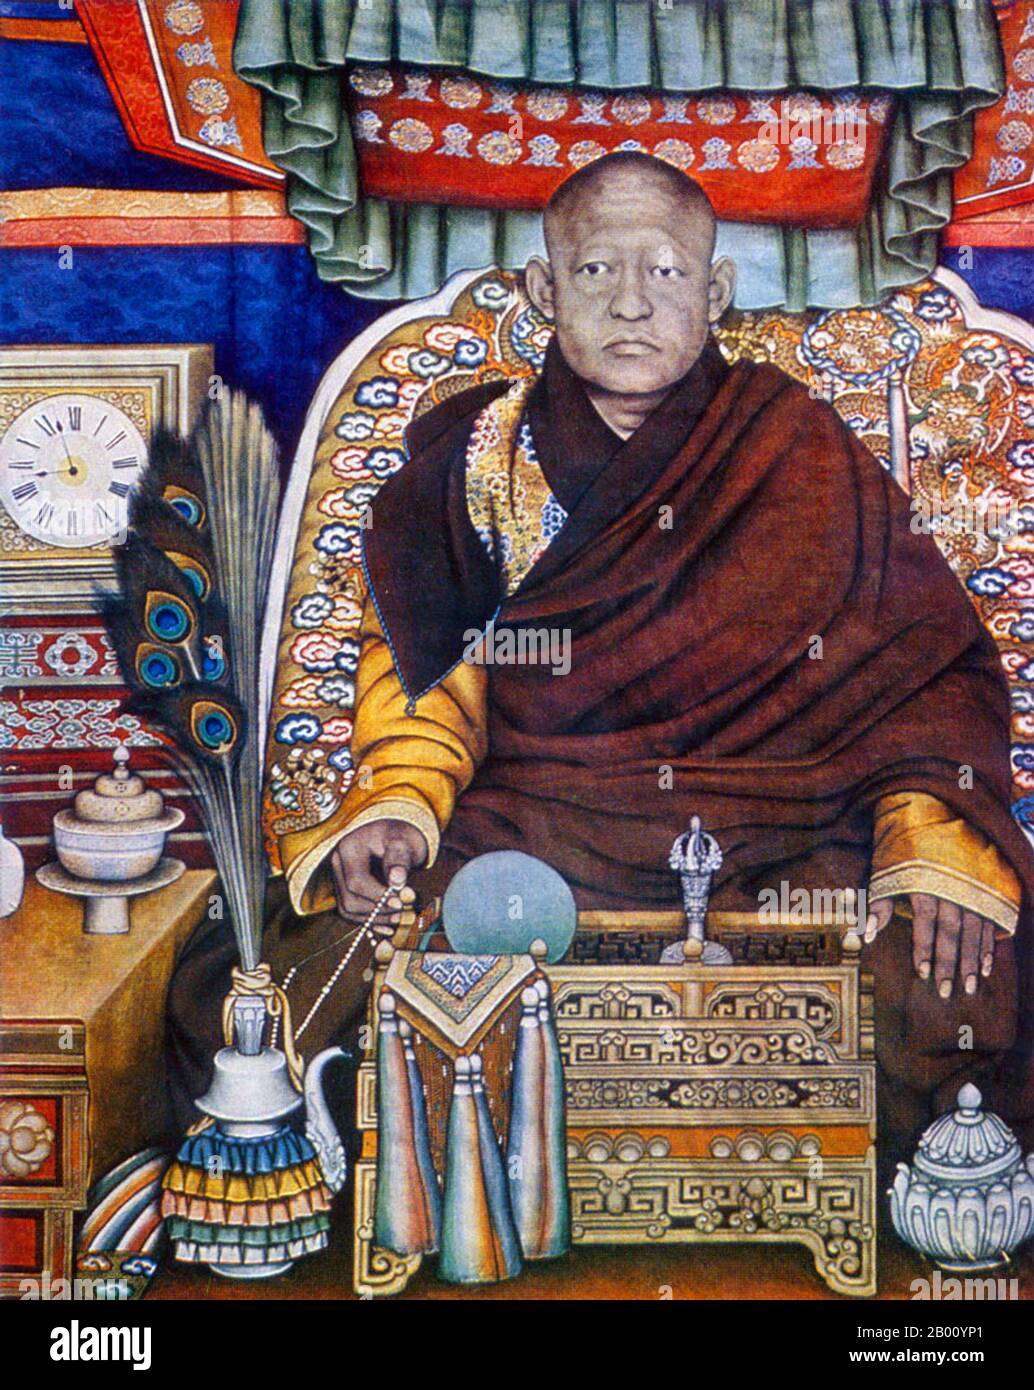 Mongolia: L'ottavo Jebtsundamba Khutugtu Bogd Khan, ultimo sovrano monarchico della Mongolia. Dipinto di Marzan Sharav (1869-1939), 1924. Il Bogd Khan (c. 1869 - 20 maggio 1924) fu contemporaneamente capo religioso e laico dello stato mongolo fino agli anni venti. Ikh Huree, come allora era noto Ulan Bator, era la sede del principale Buddha vivente della Mongolia (il Jebtsundamba Khutuktu, conosciuto anche come il Bogdo Gegen e più tardi come Bogd Khan), che si è classificato terzo nella gerarchia ecclesiastica Lamaista-Buddista, dopo il Dalai lama e il Panchen lama. Foto Stock